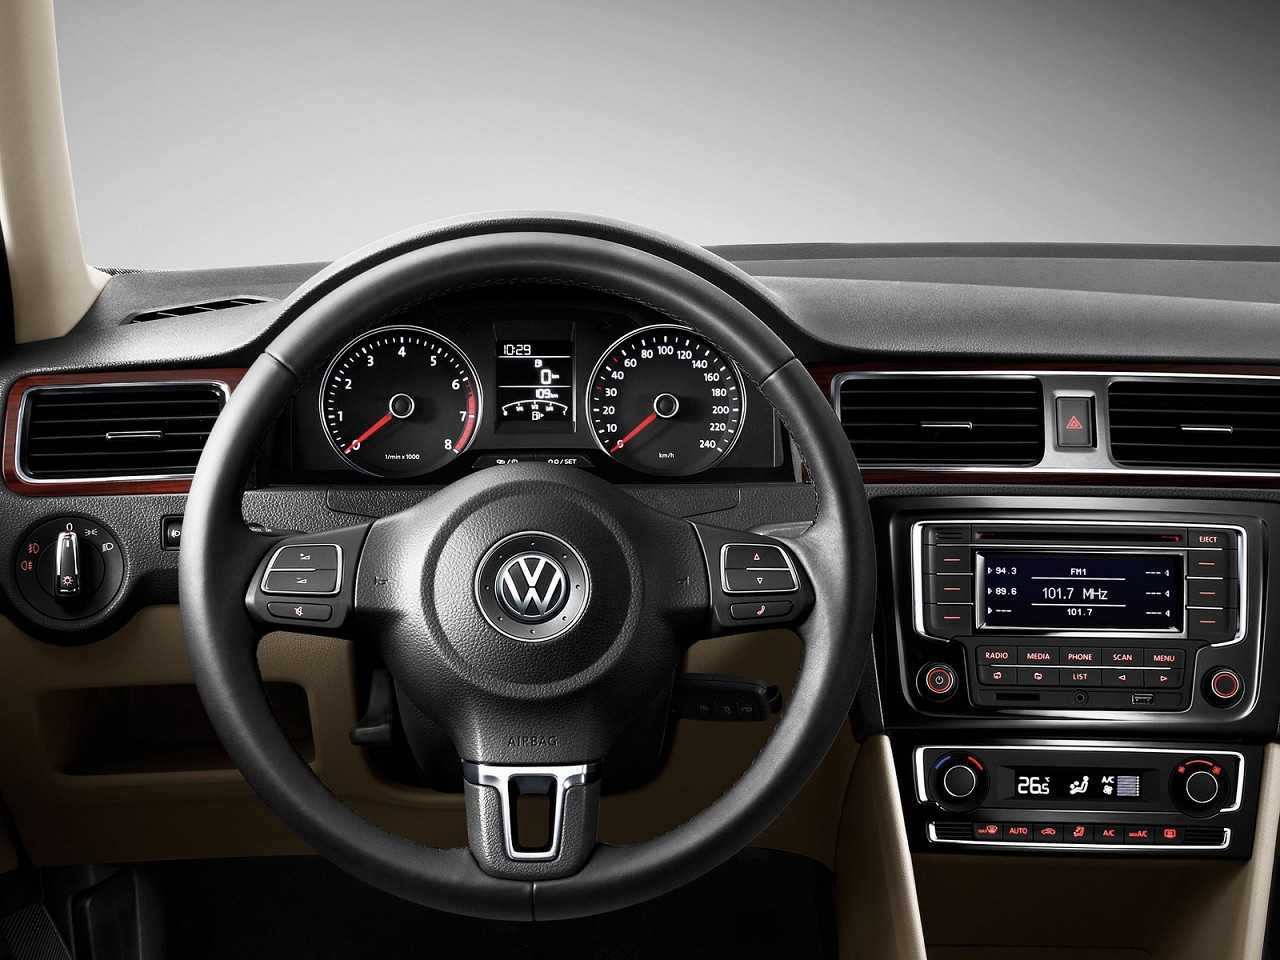 VolkswagenSantana 2013 - painel